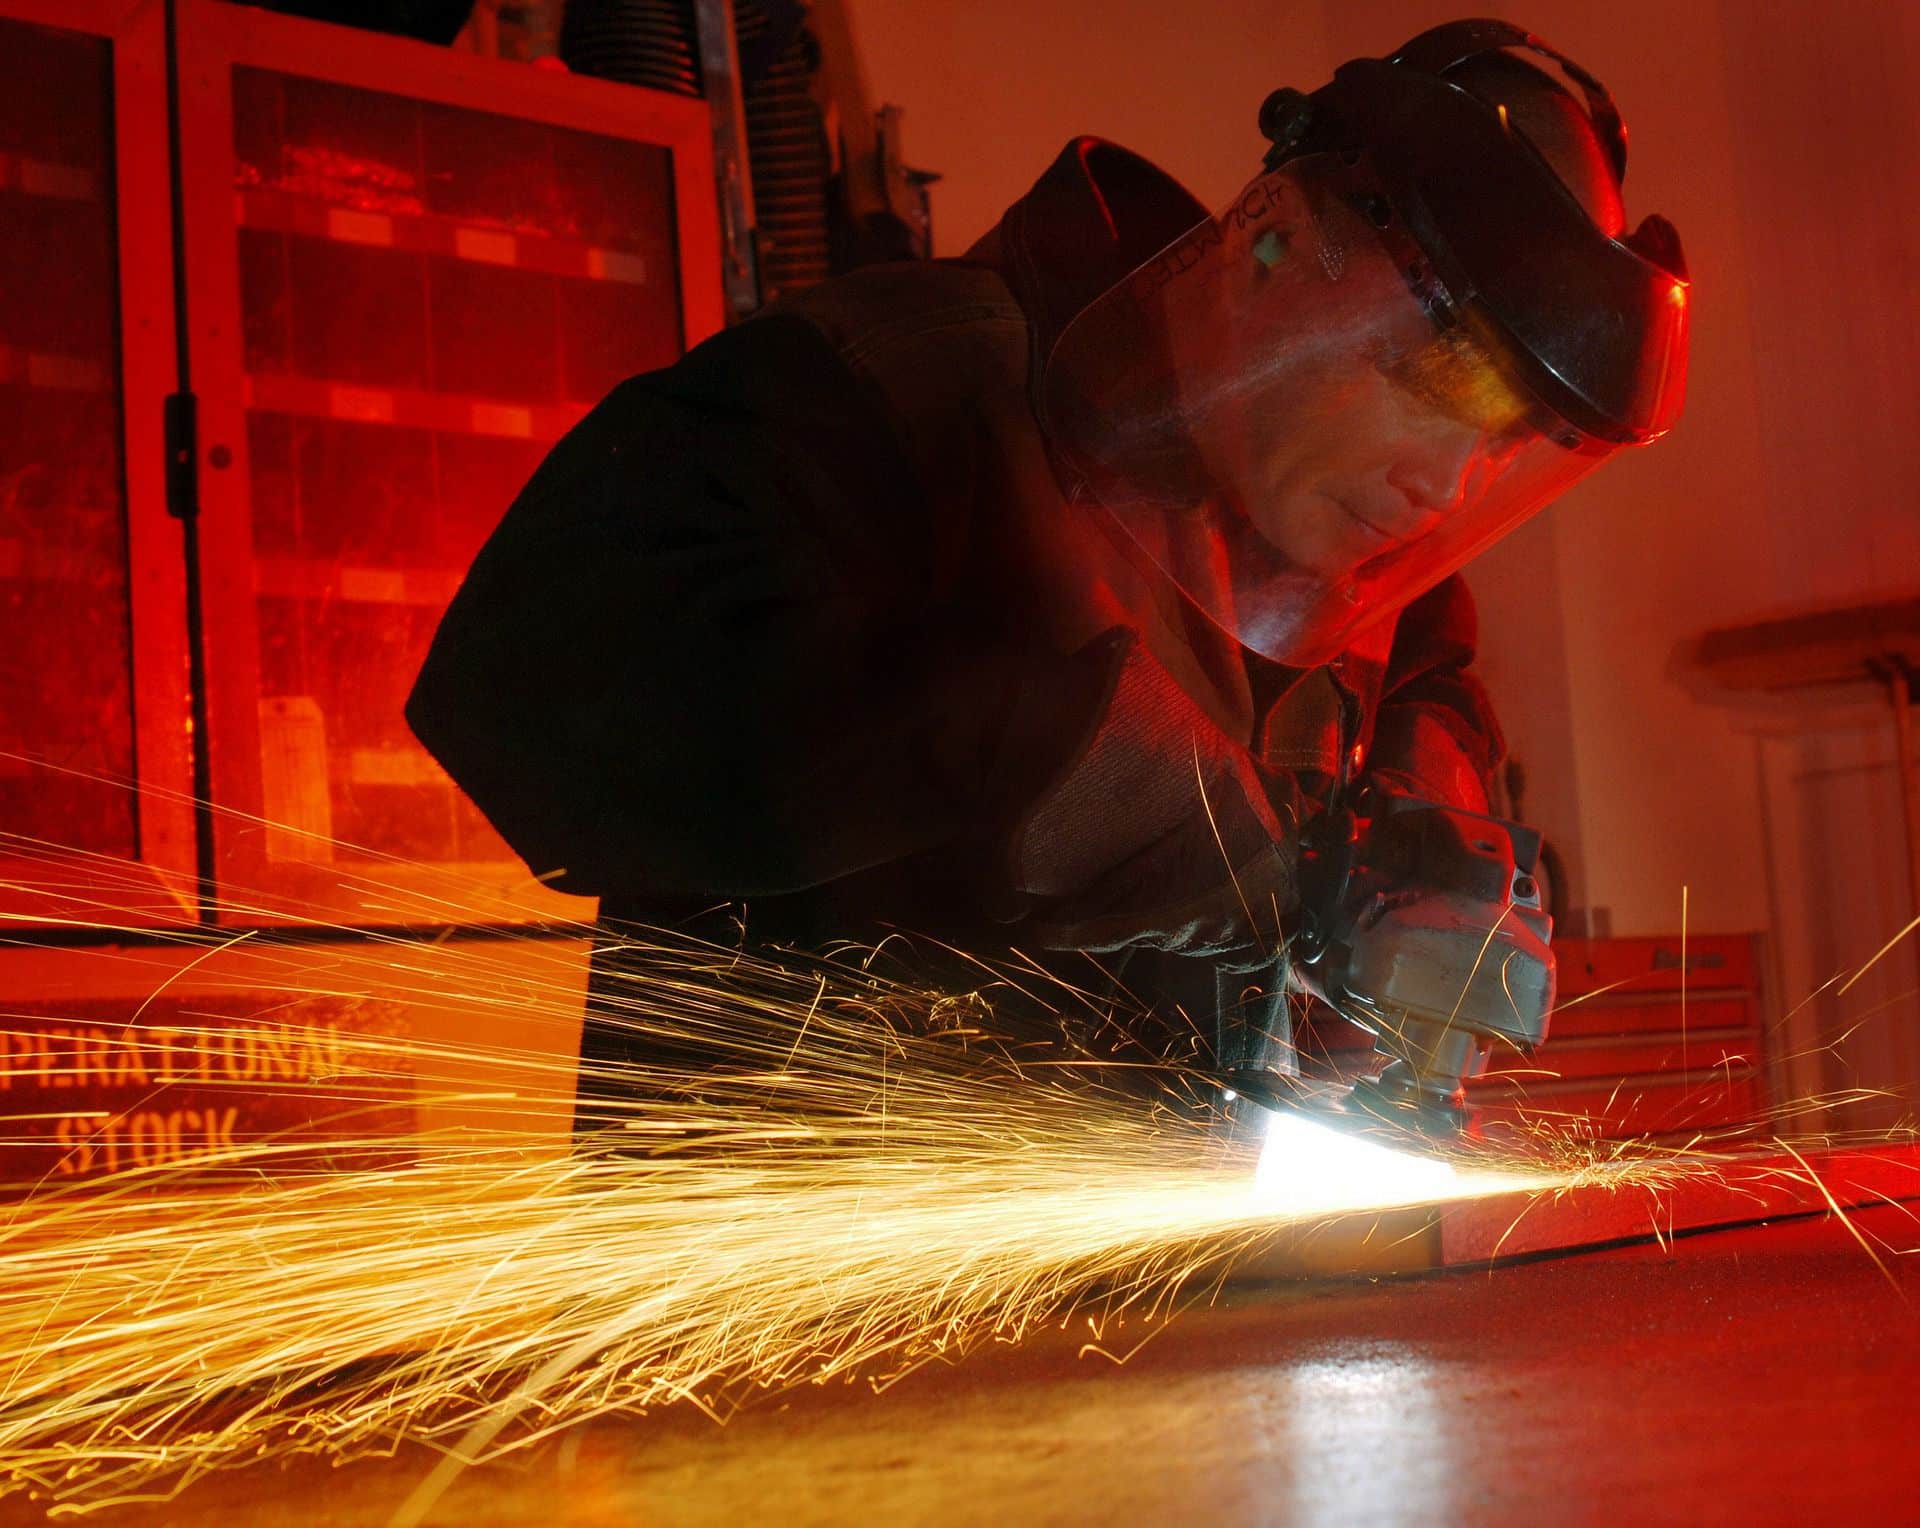 Le métier de métallier serrurier requiert de la précision. Photo PIxabay